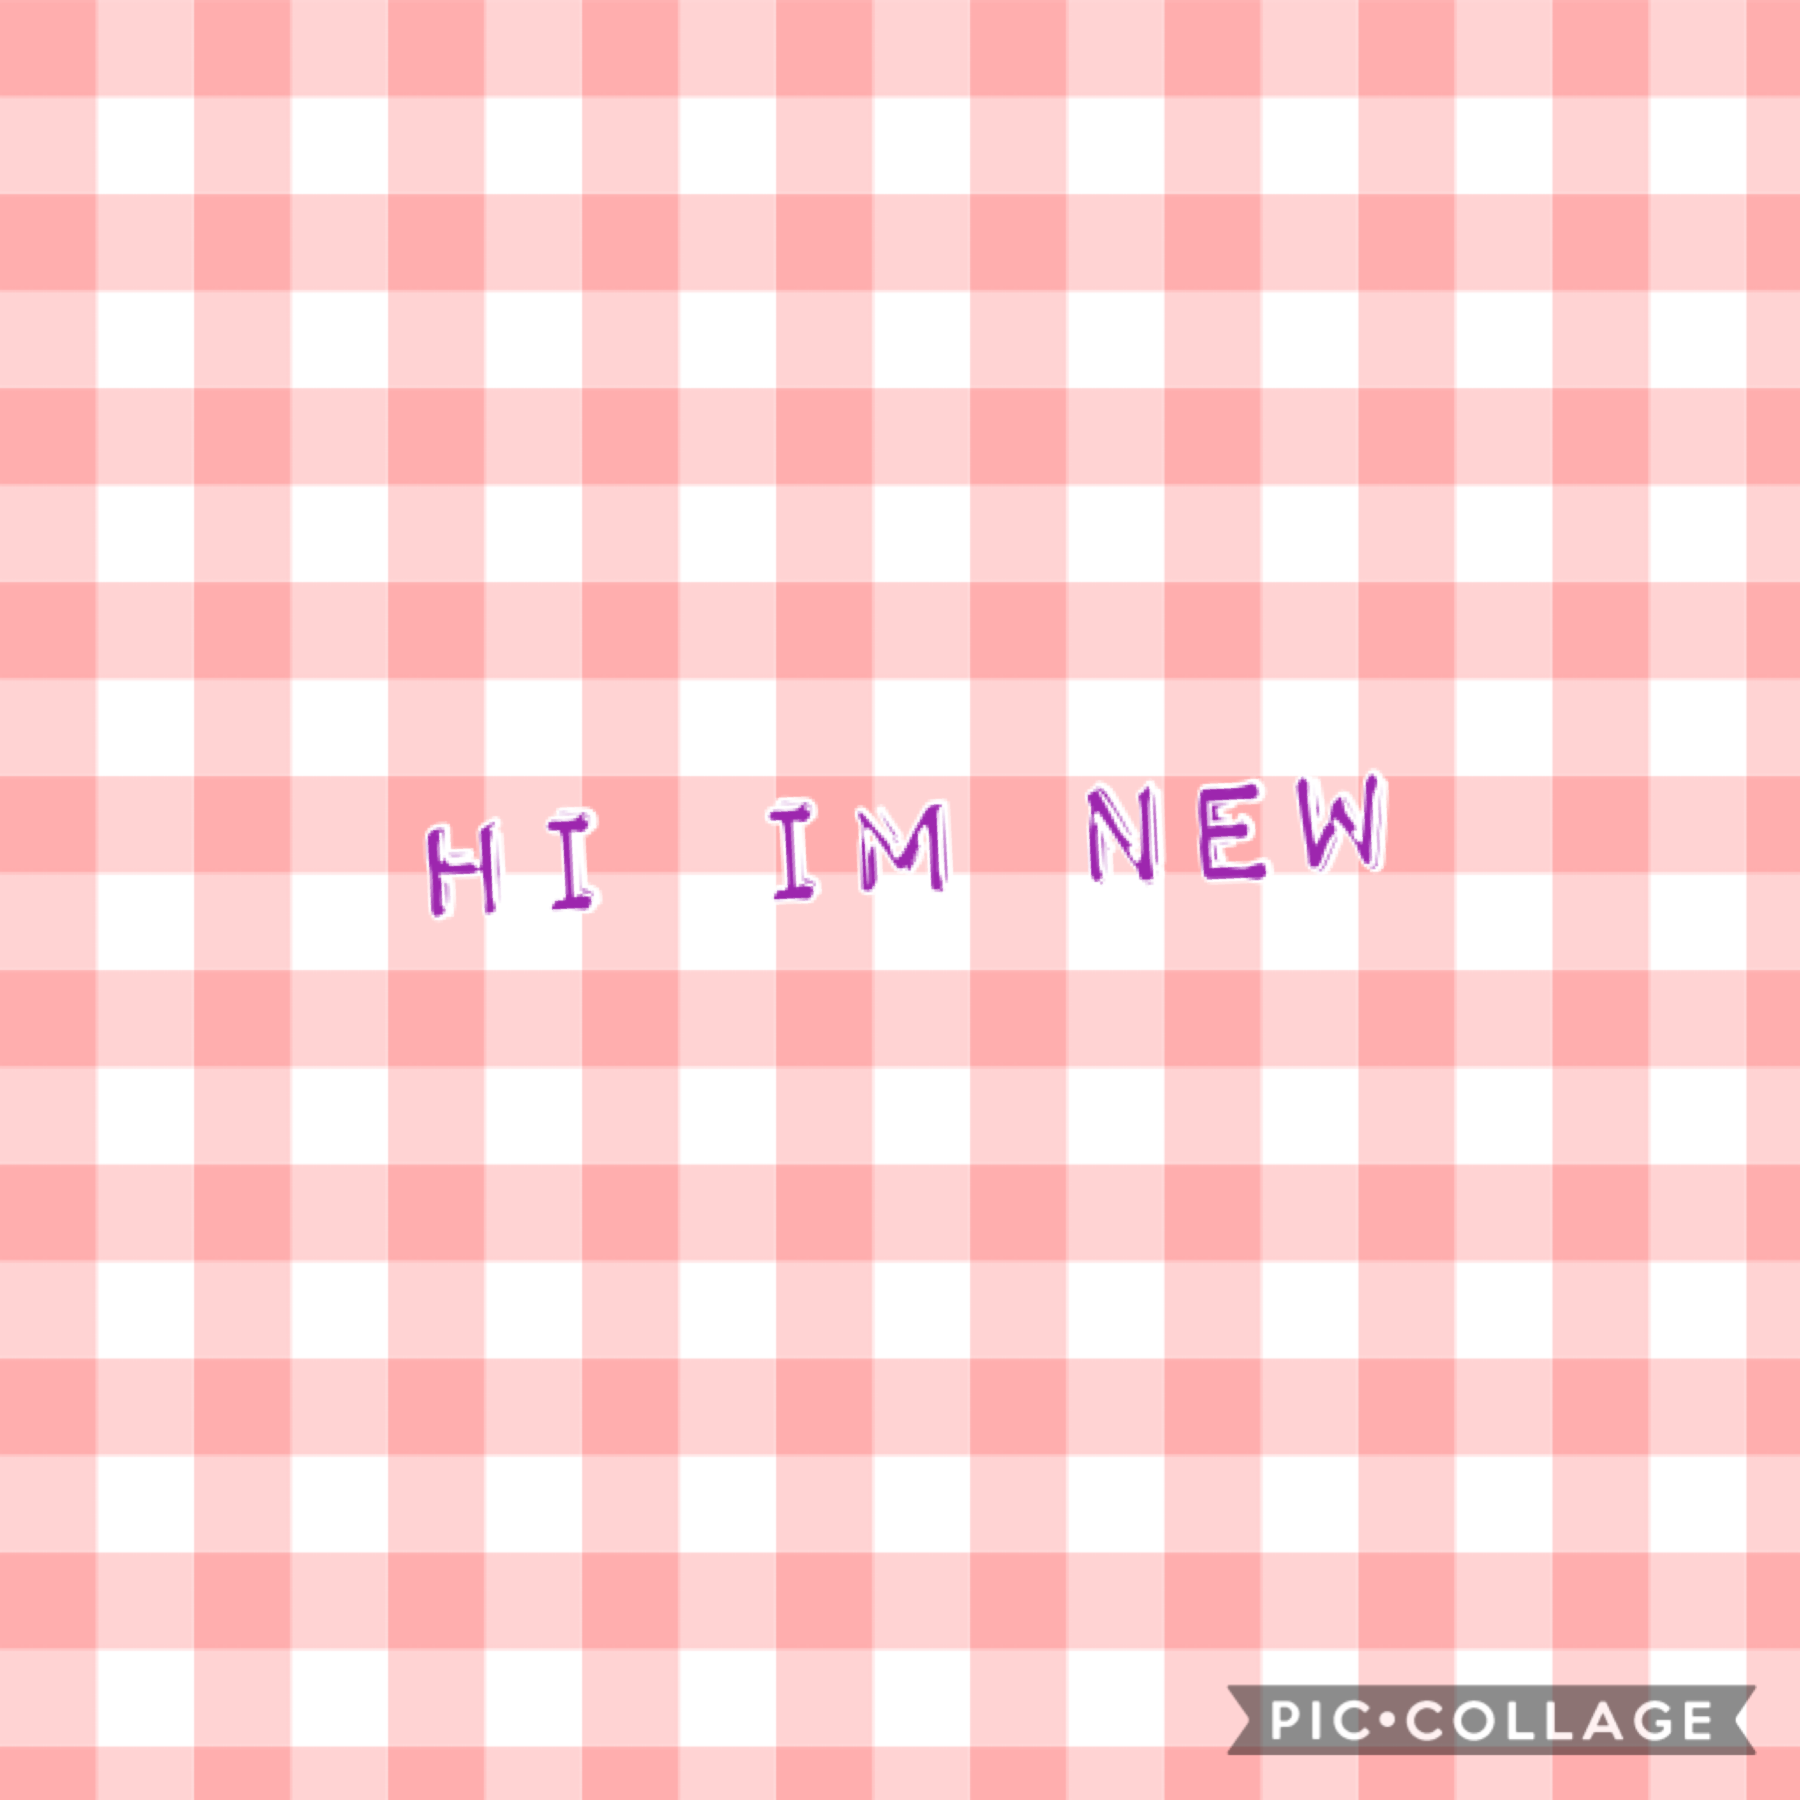 Im new! Hello